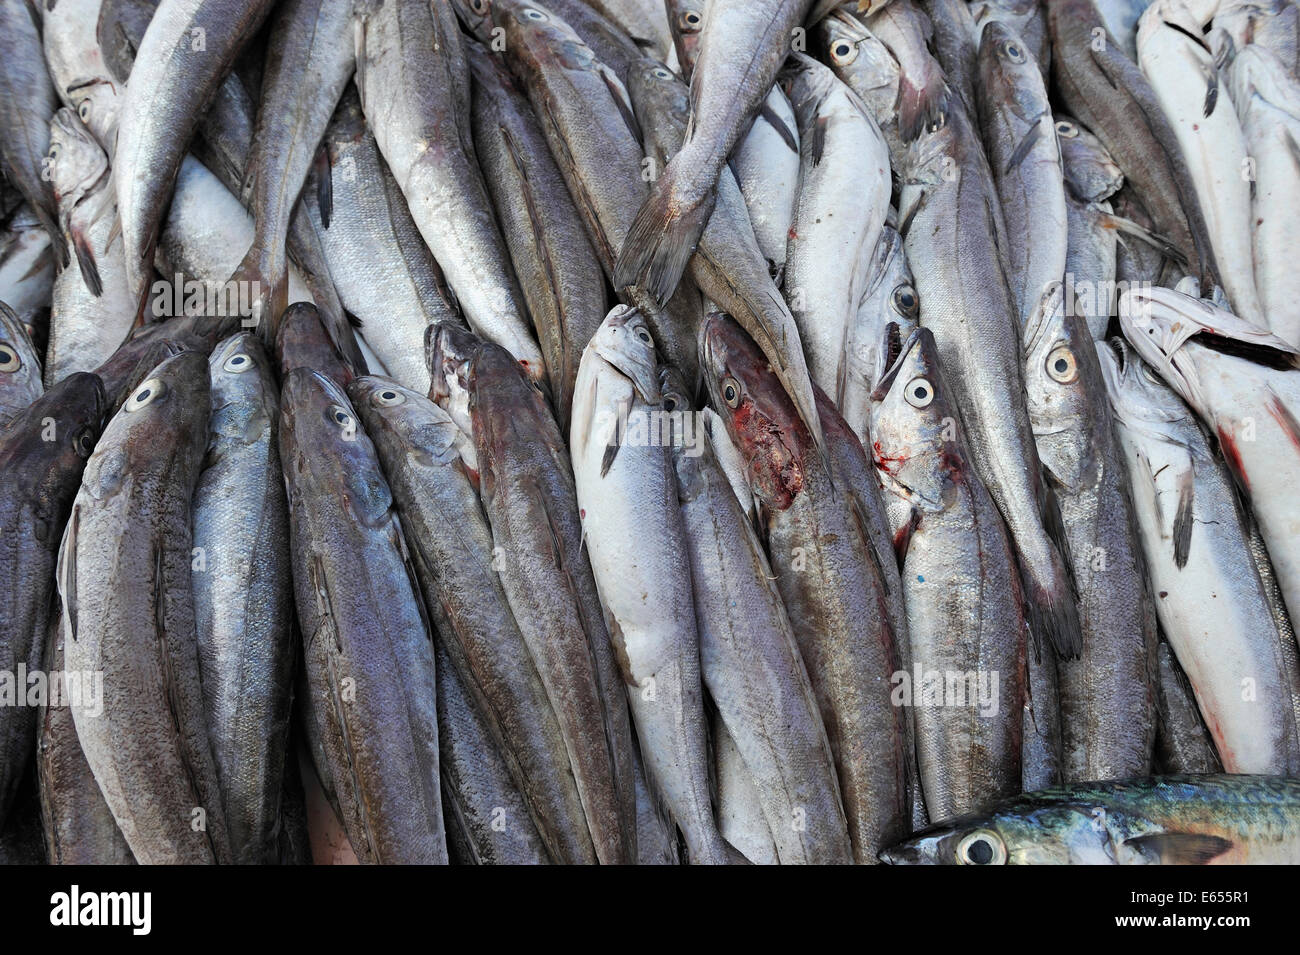 Fisch für den Verkauf auf einem Marktstand Stockfoto